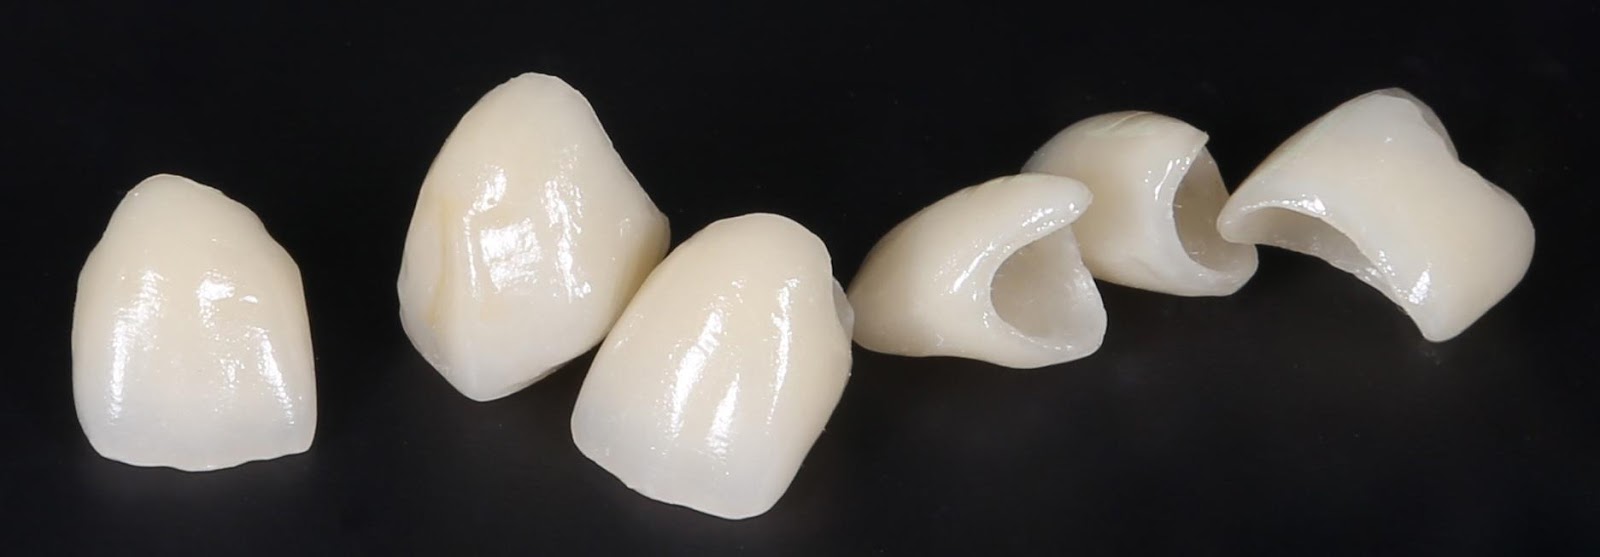 Фото: коронки из металлокерамики скрывают поврежденные или разрушенные зубы